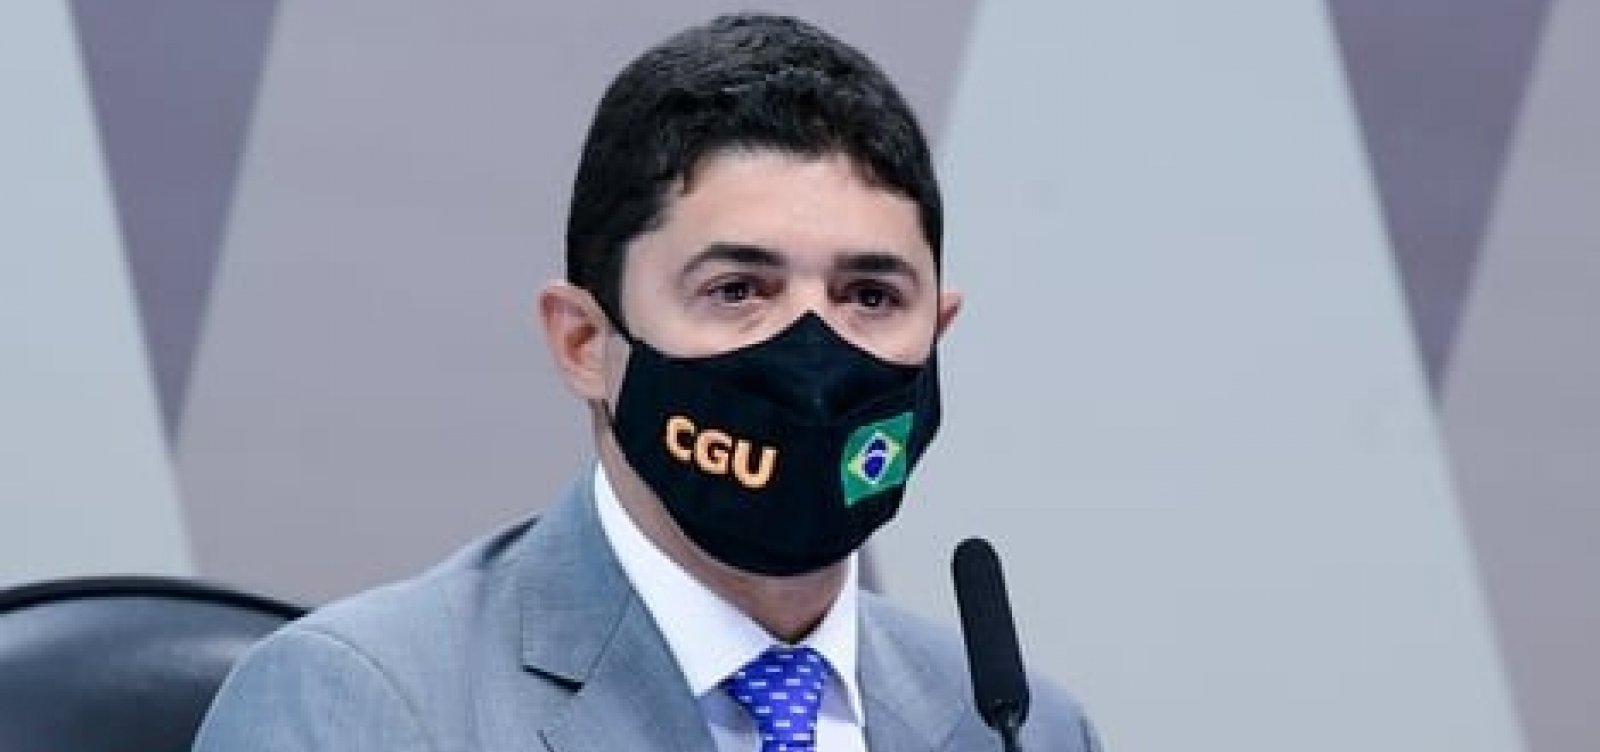 Ministro da CGU ofende senadora e passa a ser investigado pela CPI da Covid